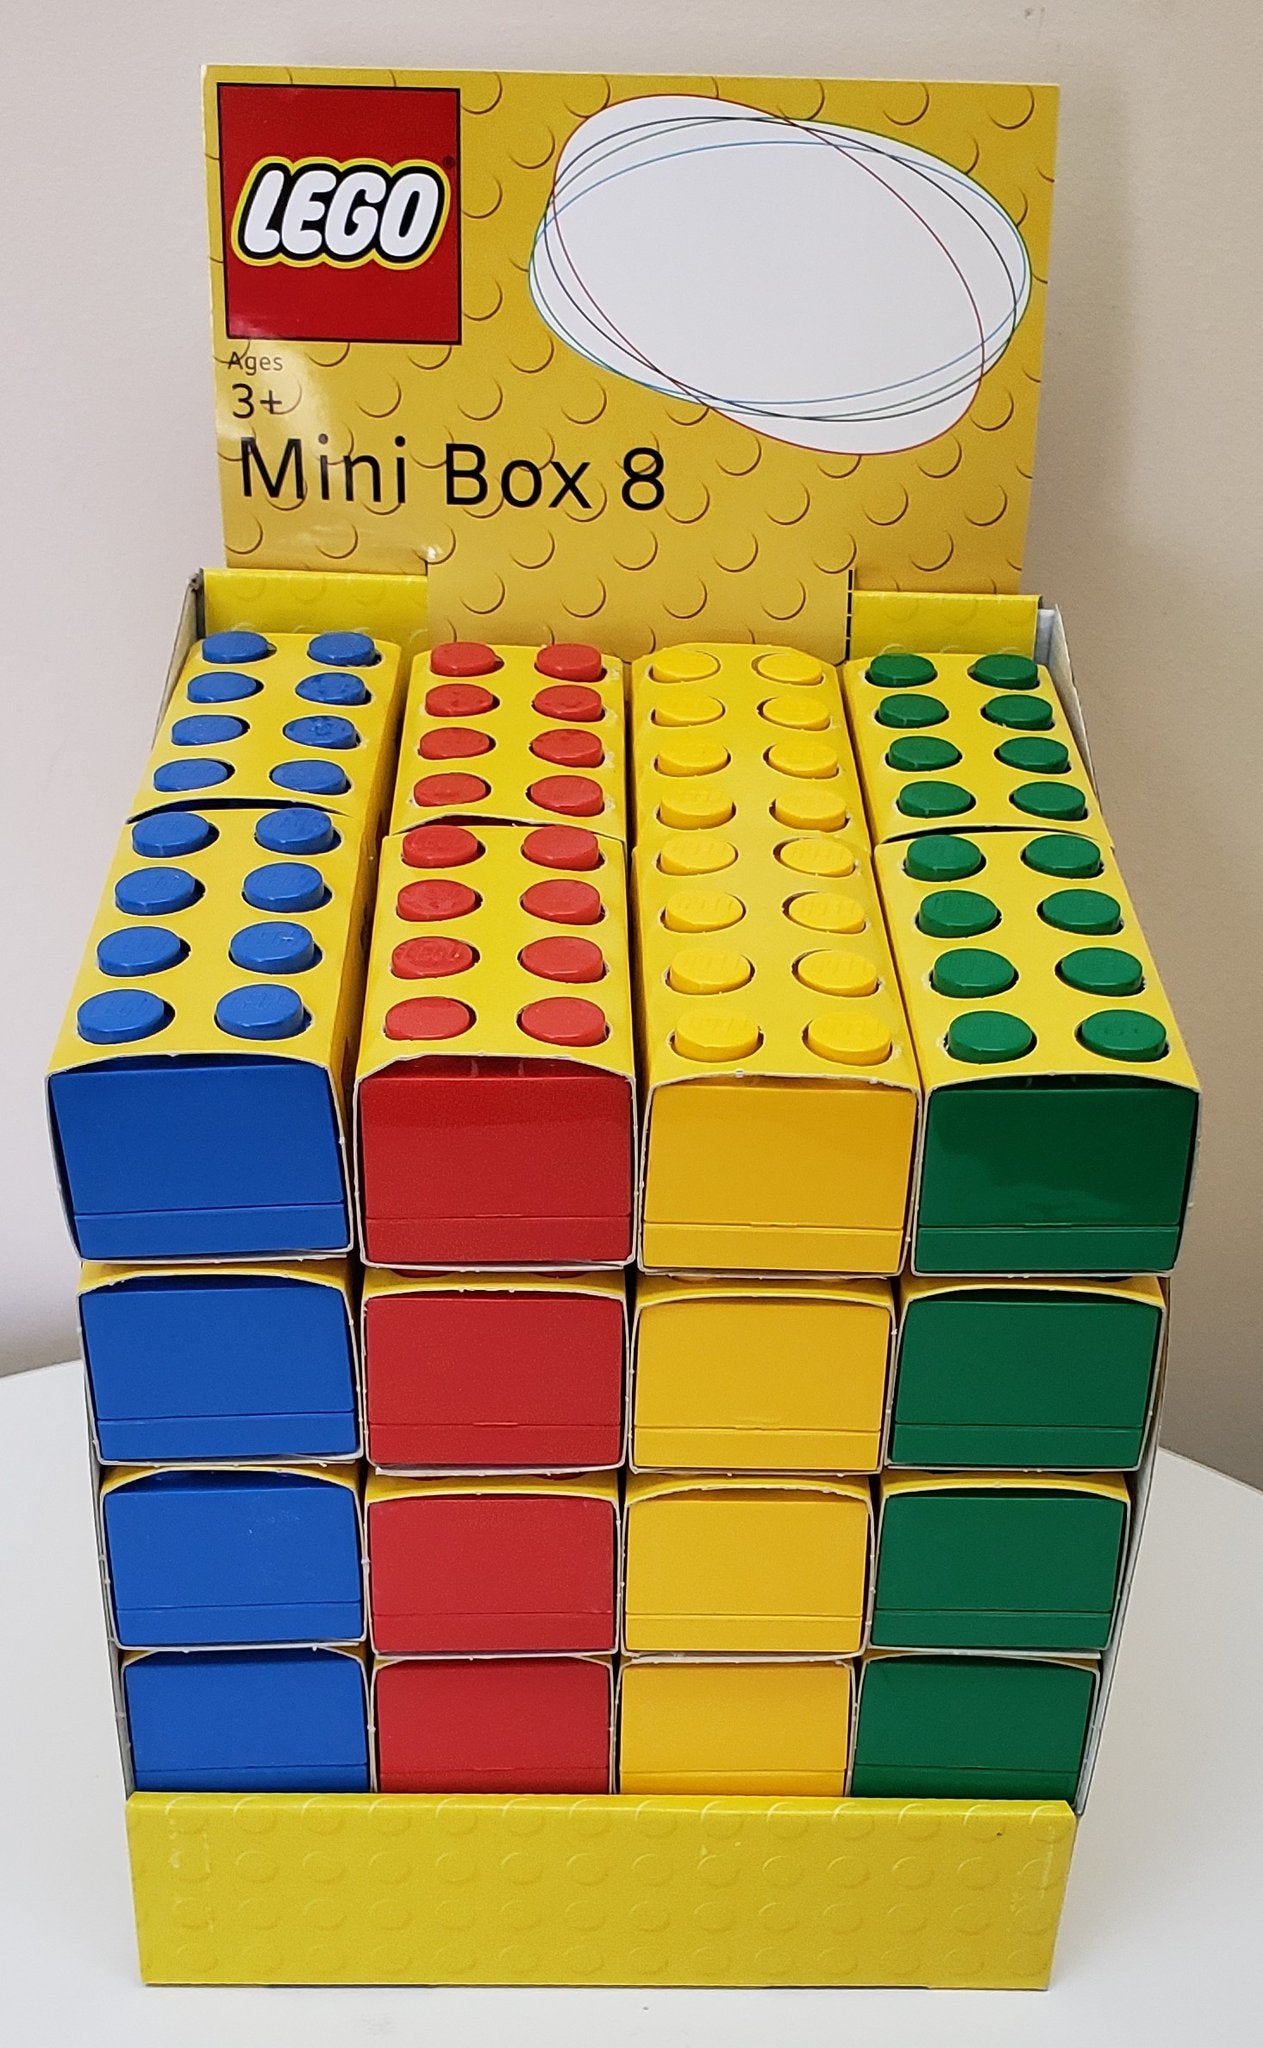 LEGO: Mini Box 8